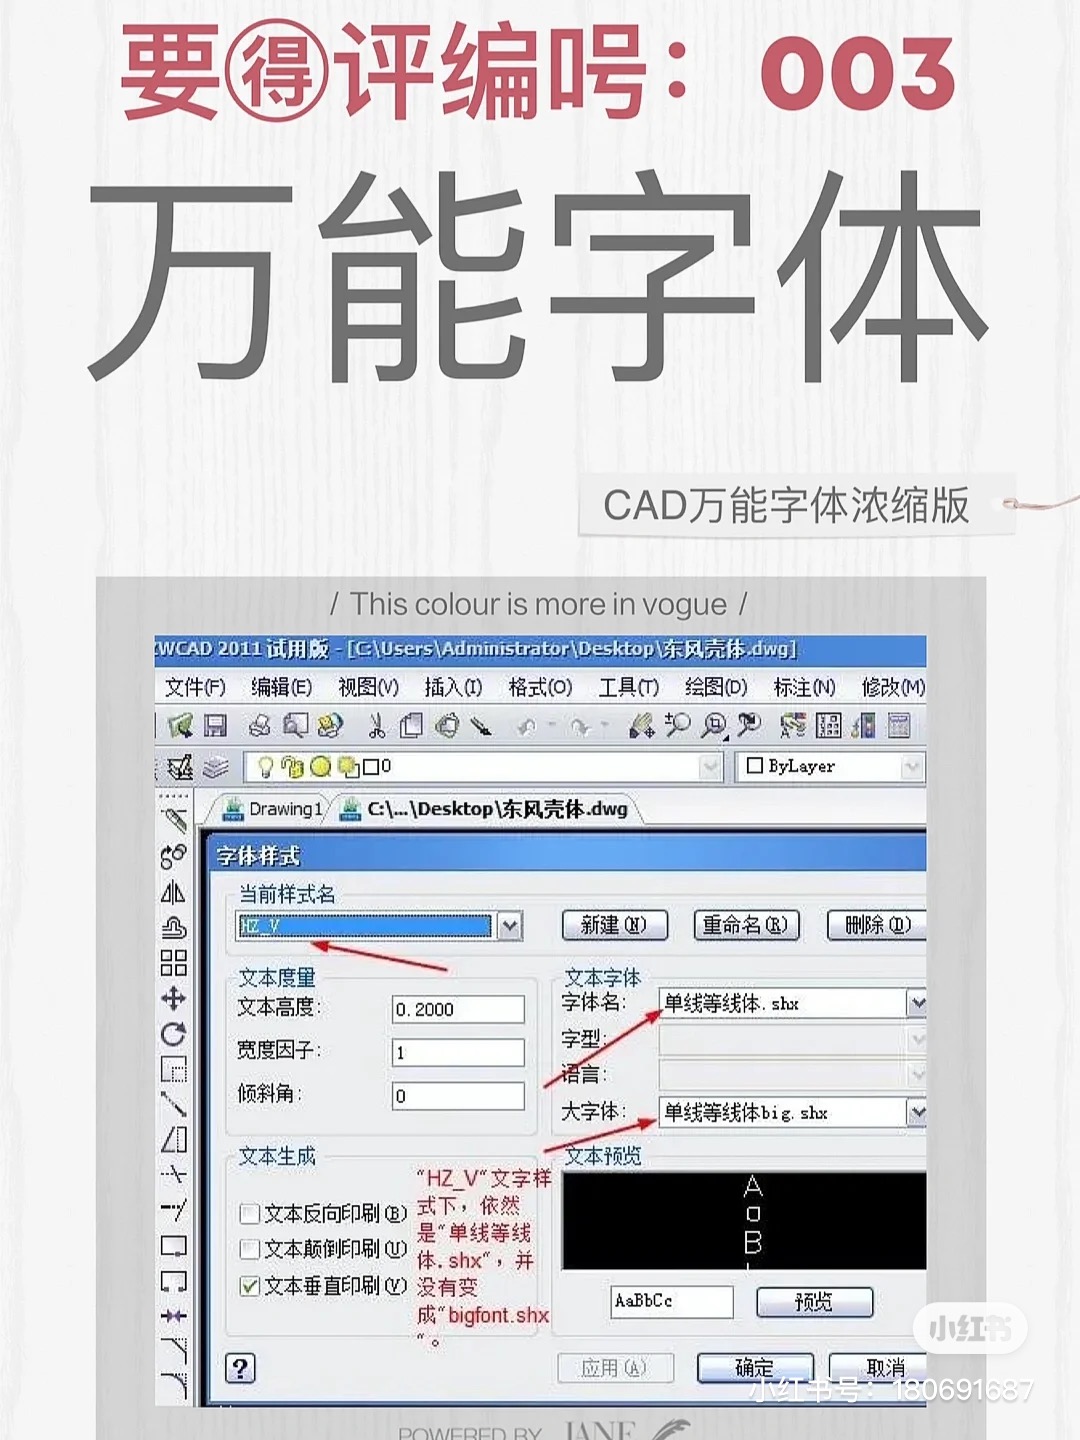 【003】CAD万能字体浓缩版，解决字体乱码问题-1